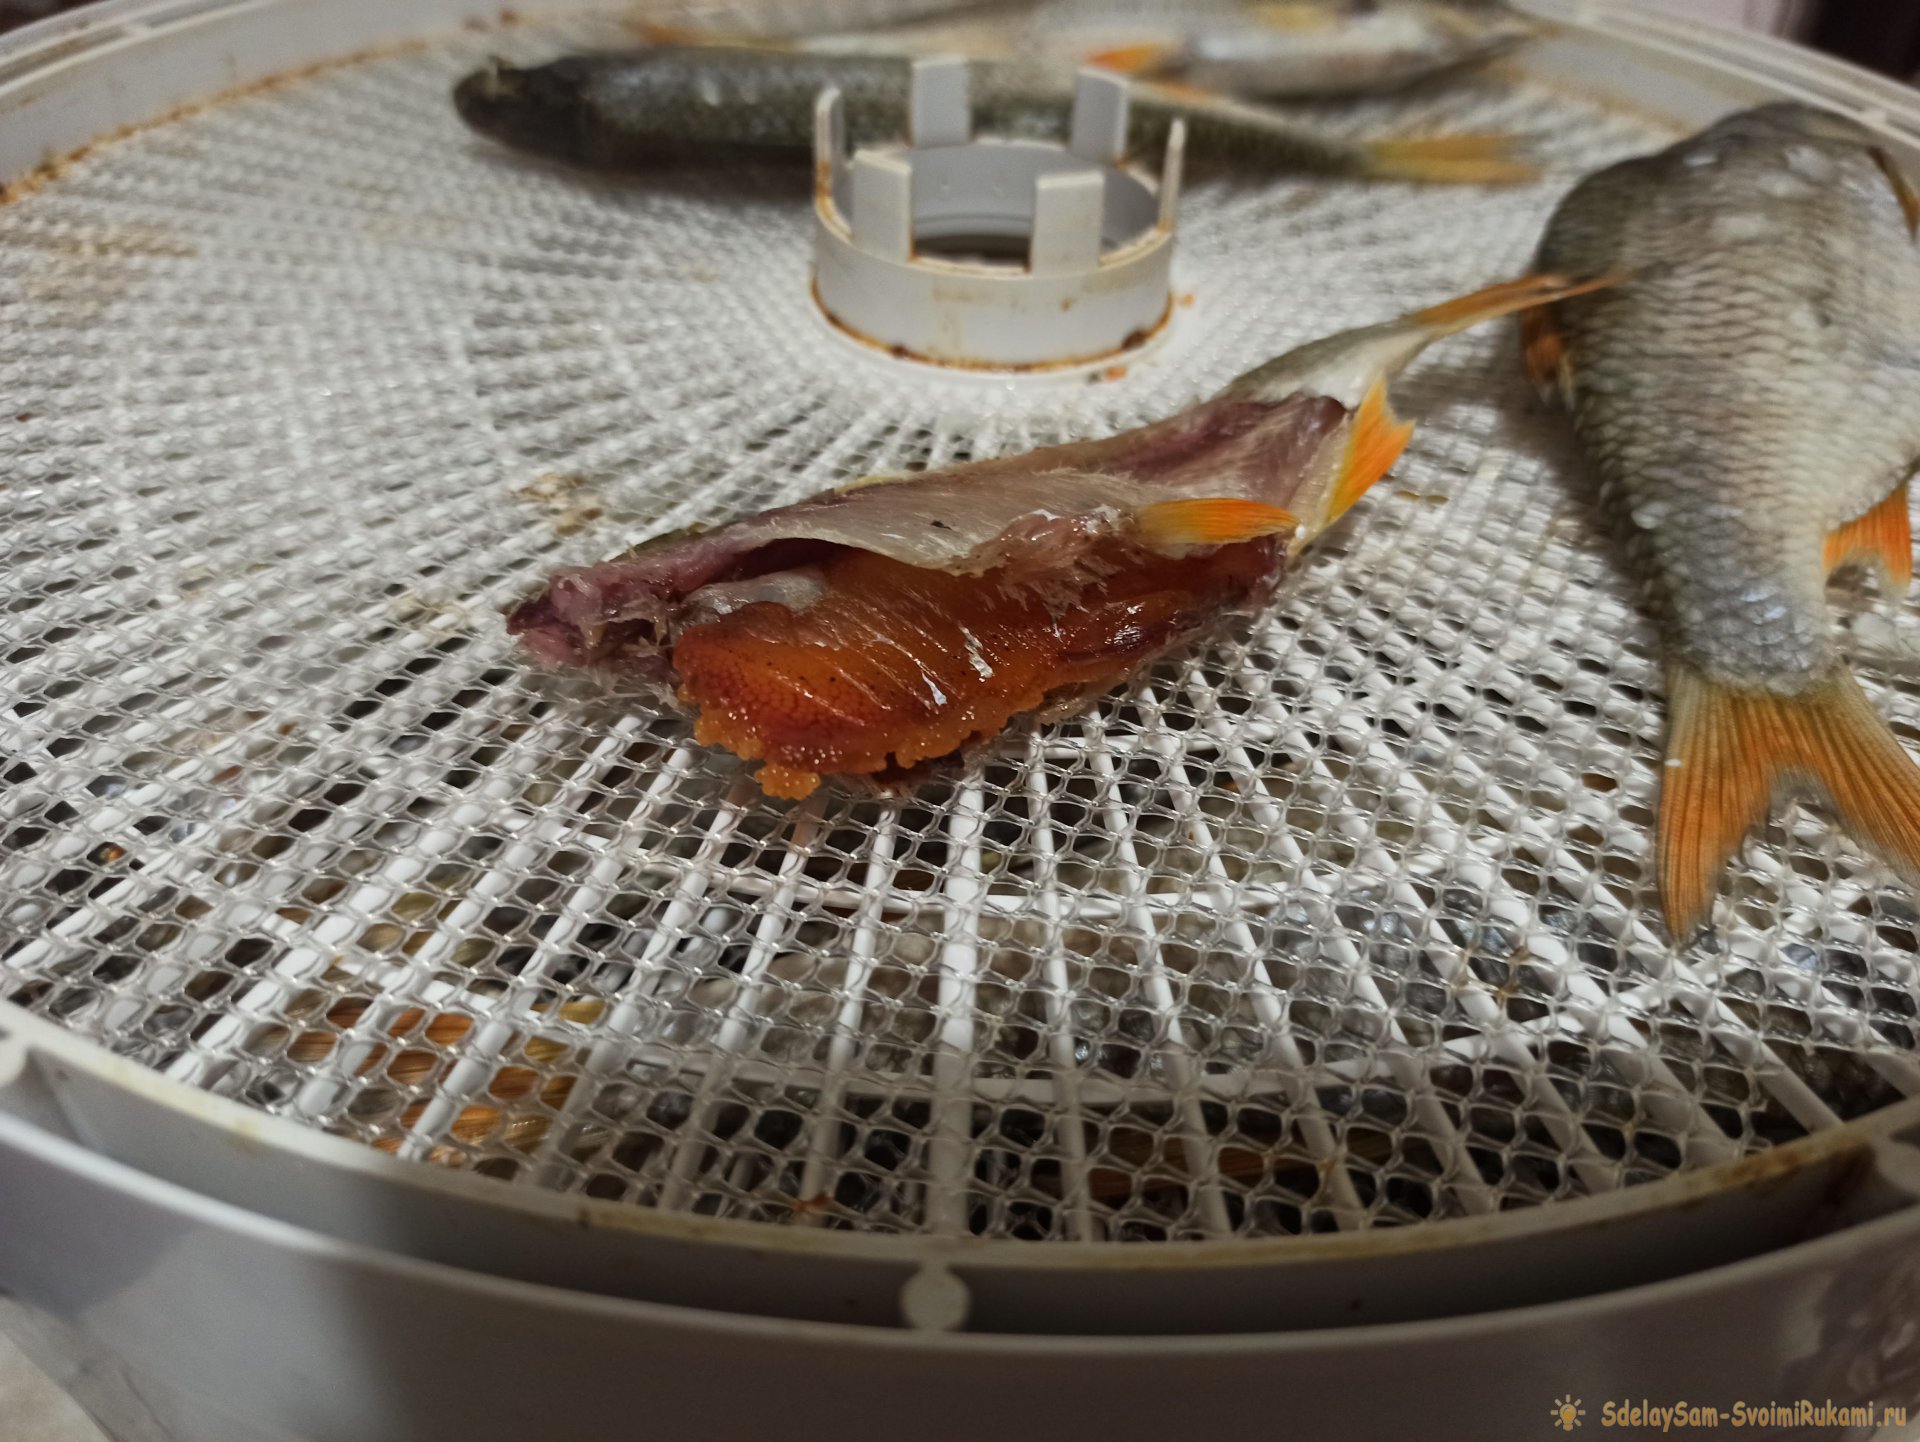 Простой способ засолить и засушить рыбу в электросушилке